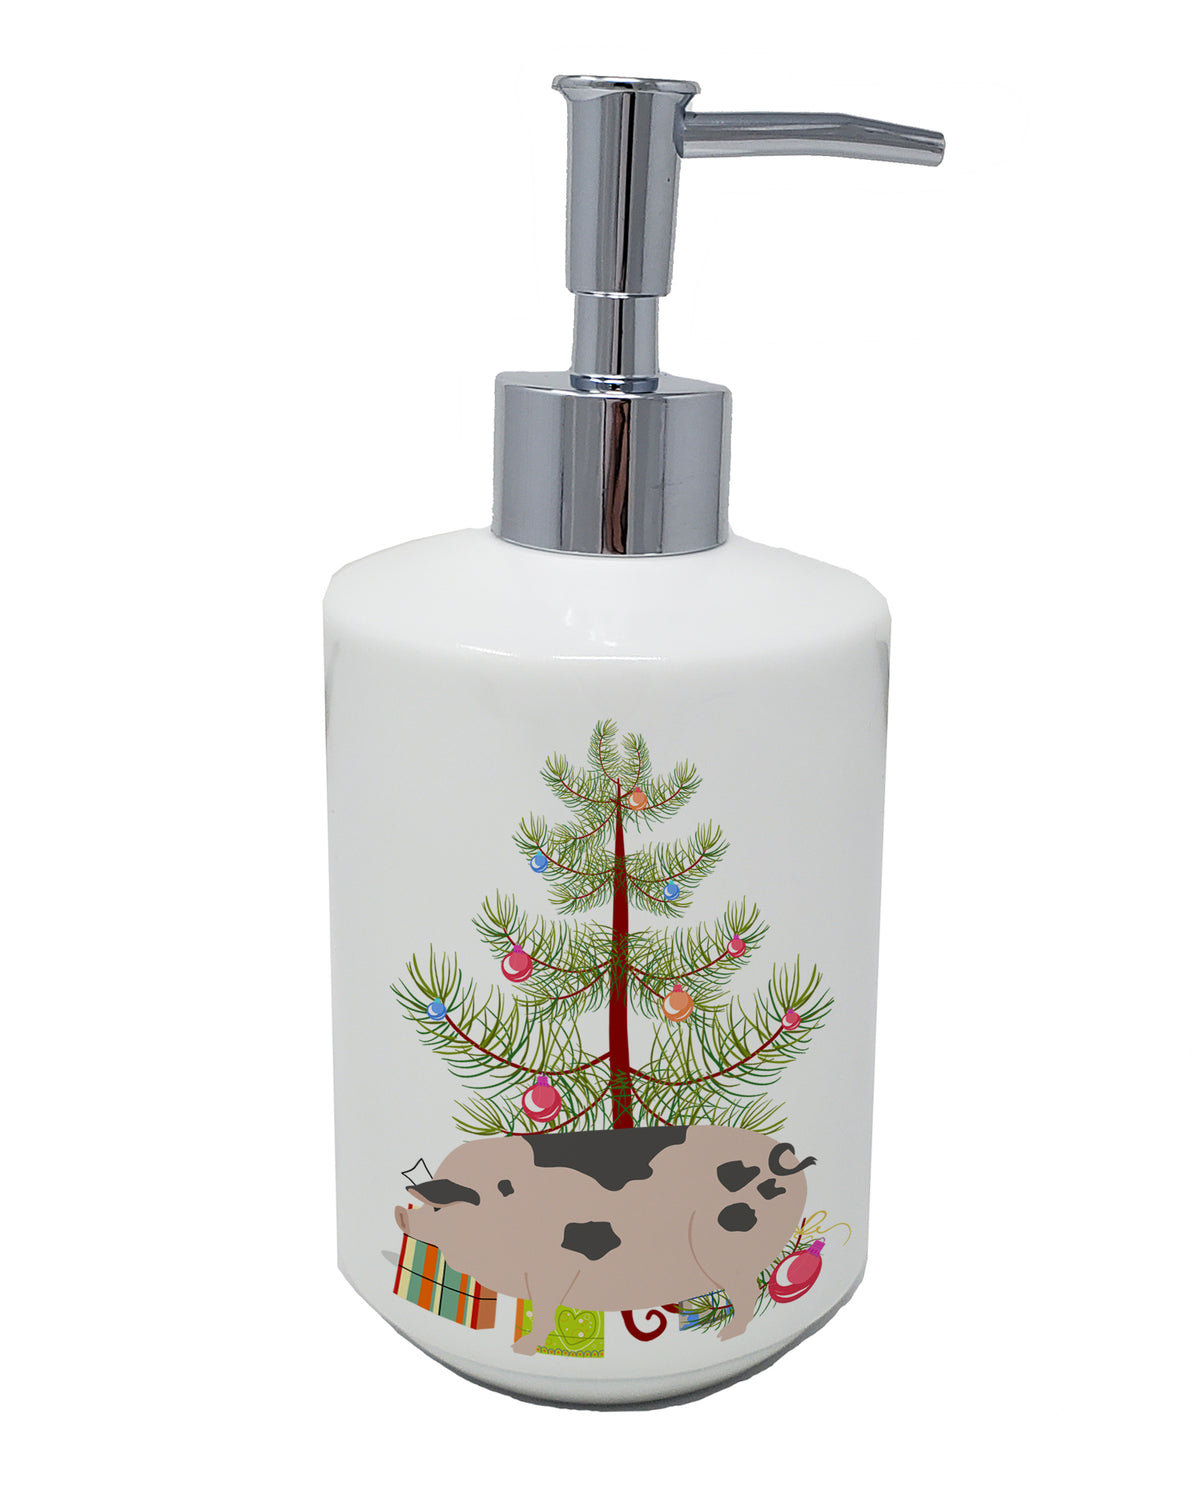 Buy this Gloucester Old Spot Pig Christmas Ceramic Soap Dispenser